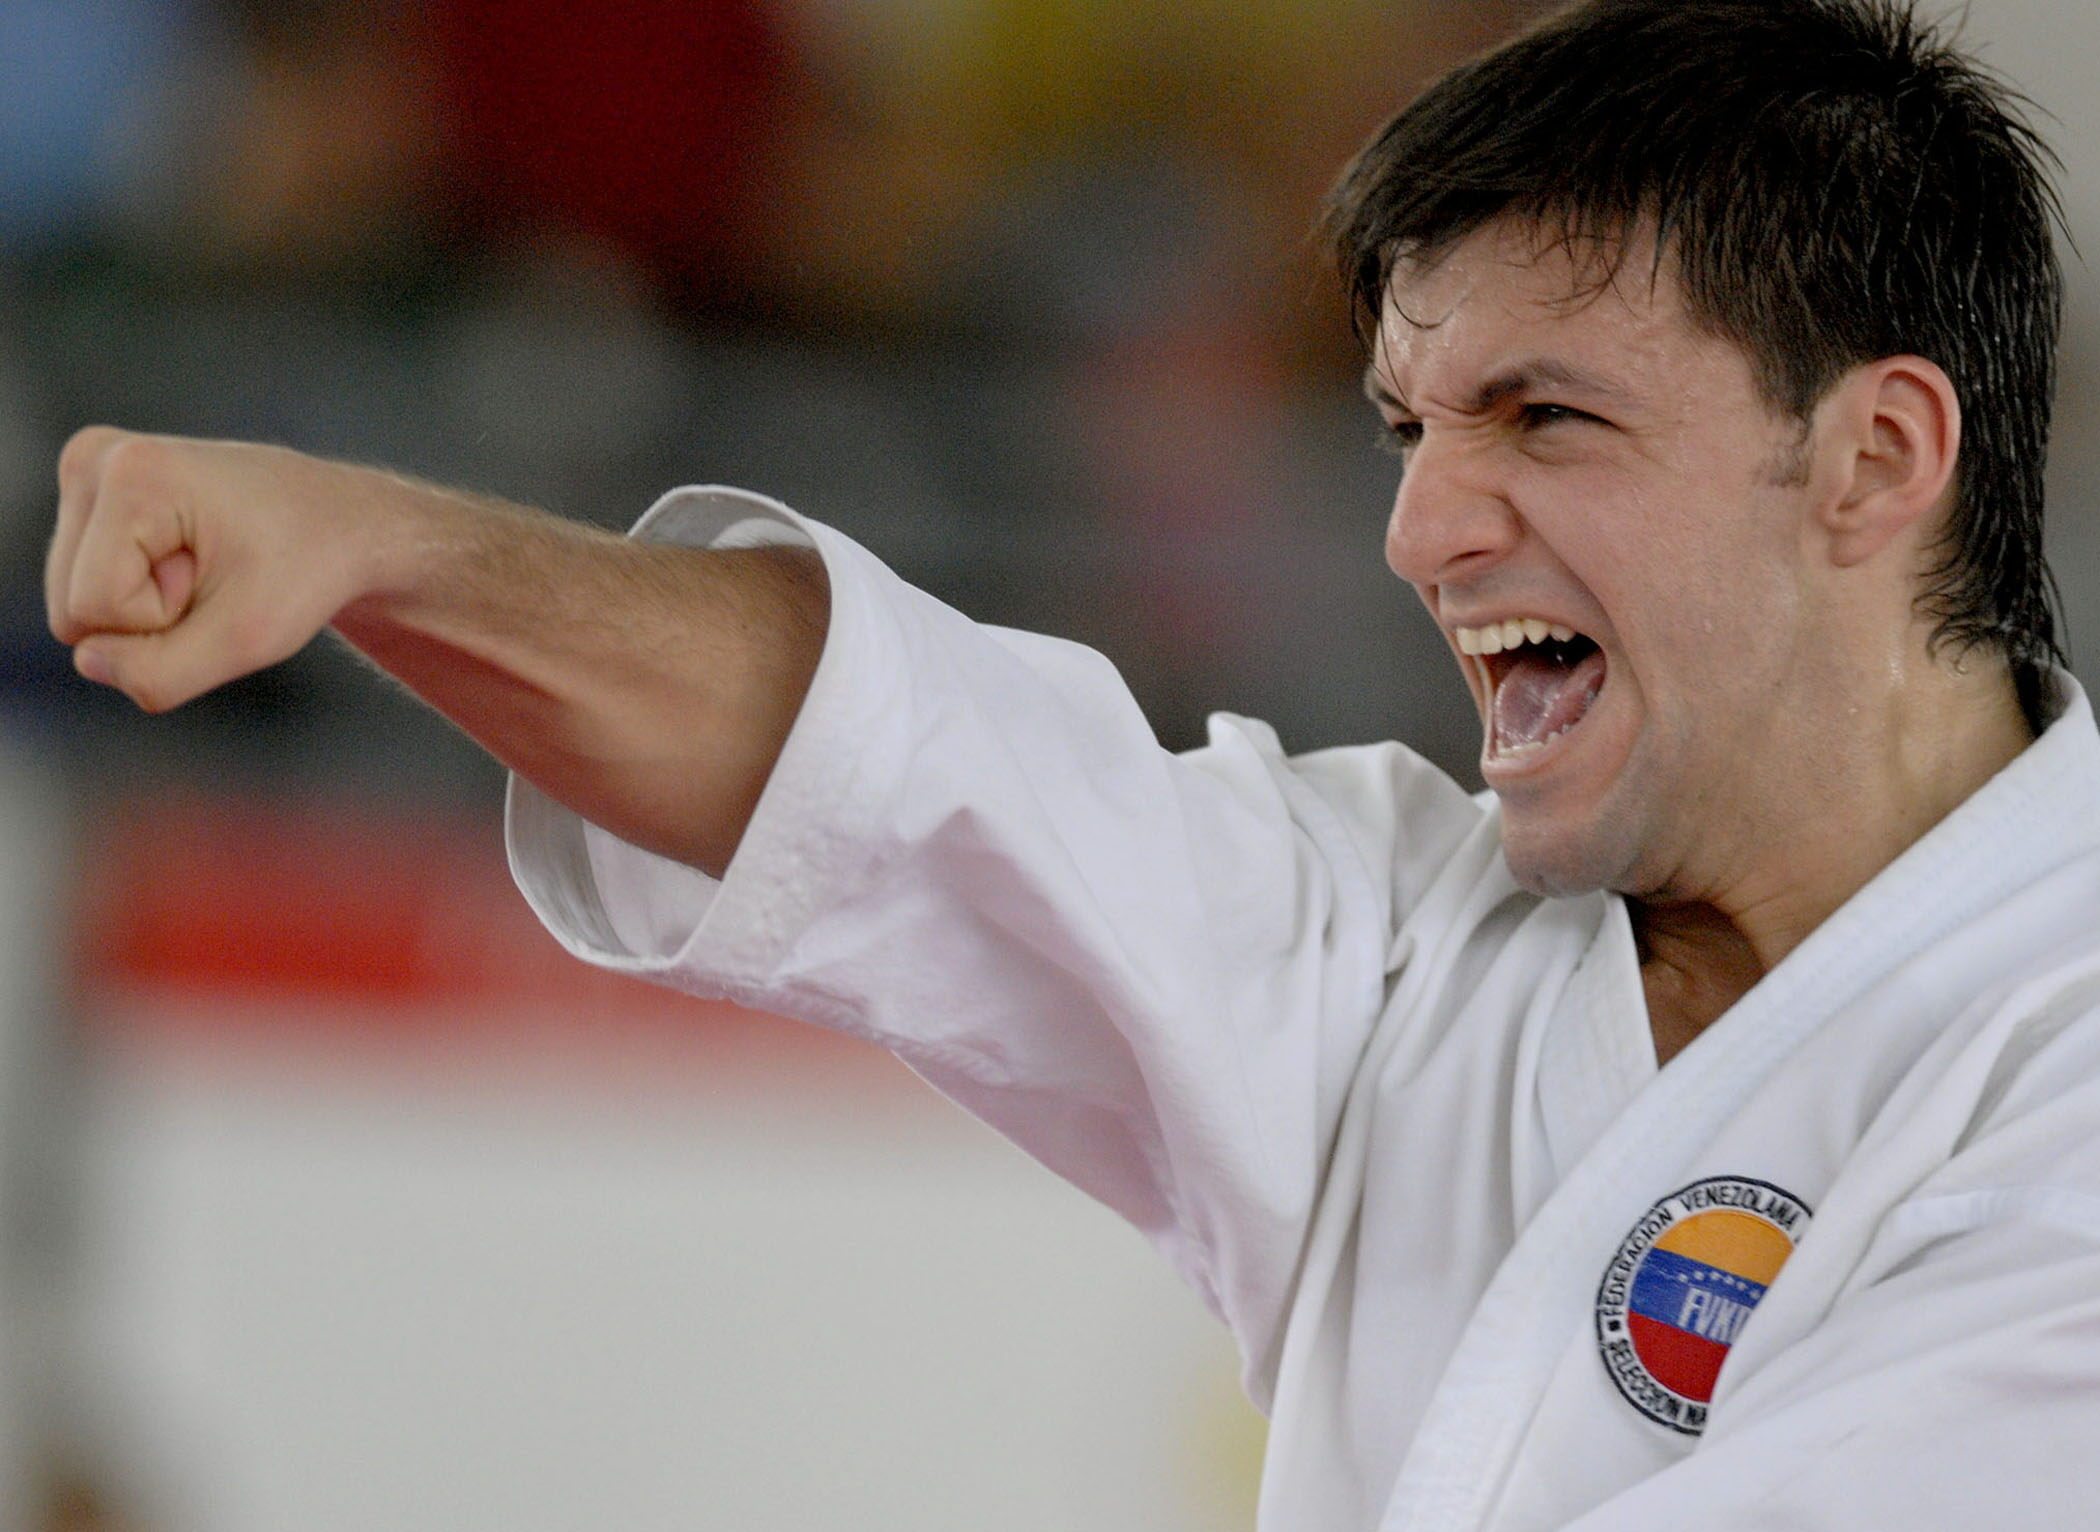 Antonio Díaz es el actual campeón en la modalidad de Kata de los Juegos Mundiales.